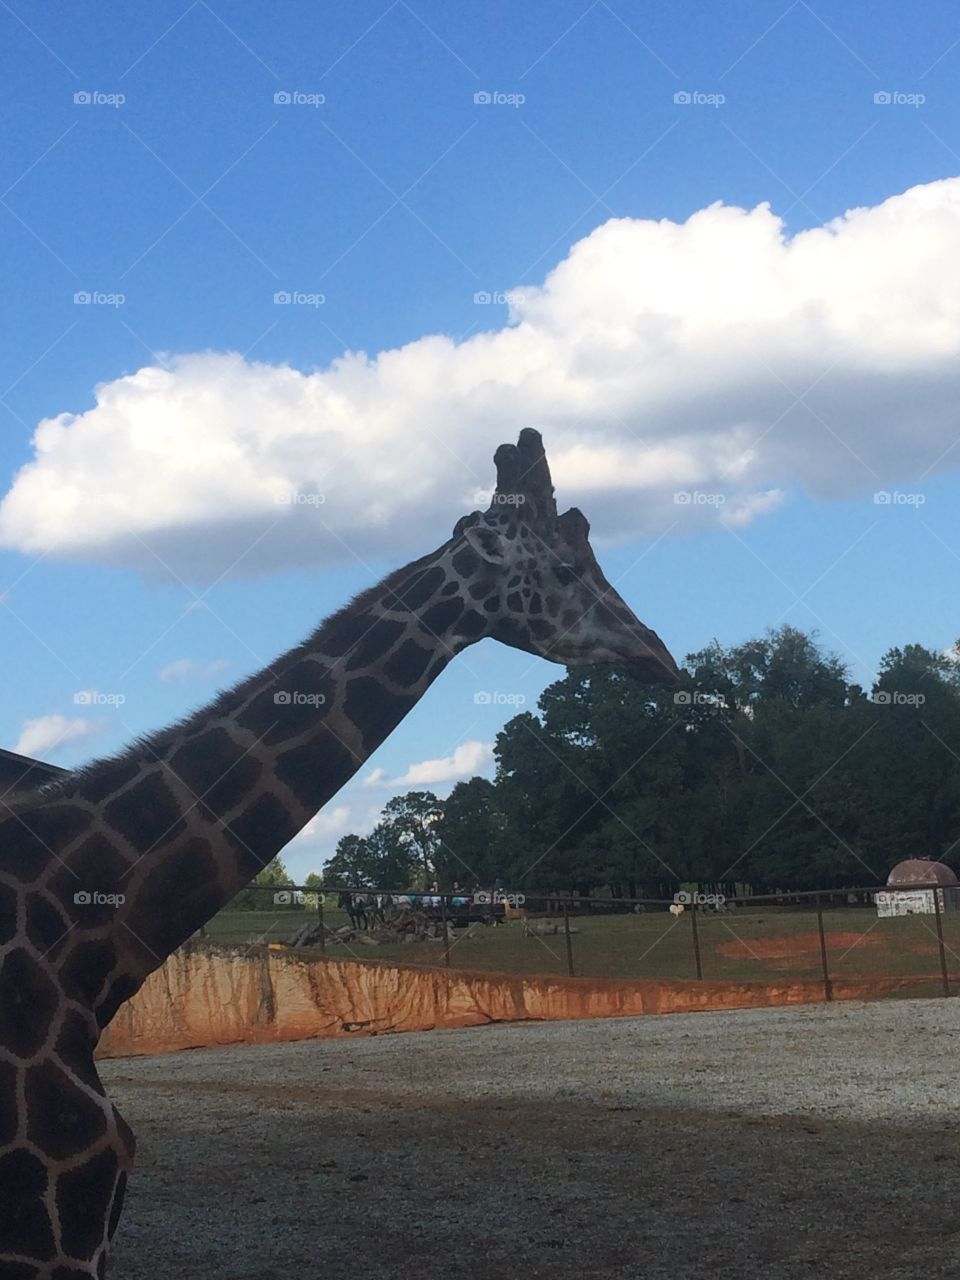 Giraffe at petting park 